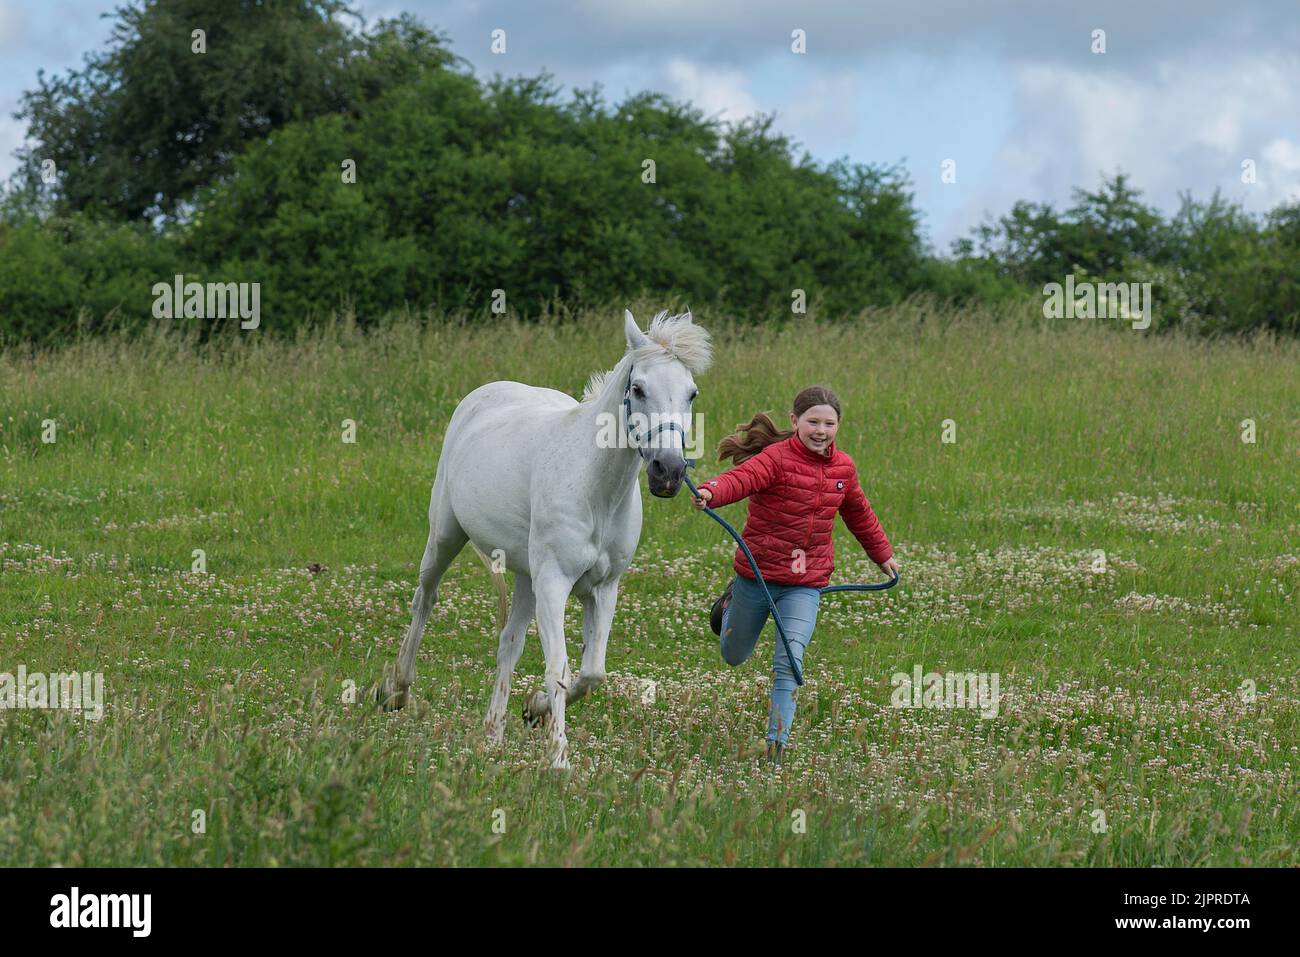 Ragazza, 10 anni, che corre con il suo cavallo nel pascolo, Meclemburgo-Pomerania occidentale, Germania Foto Stock